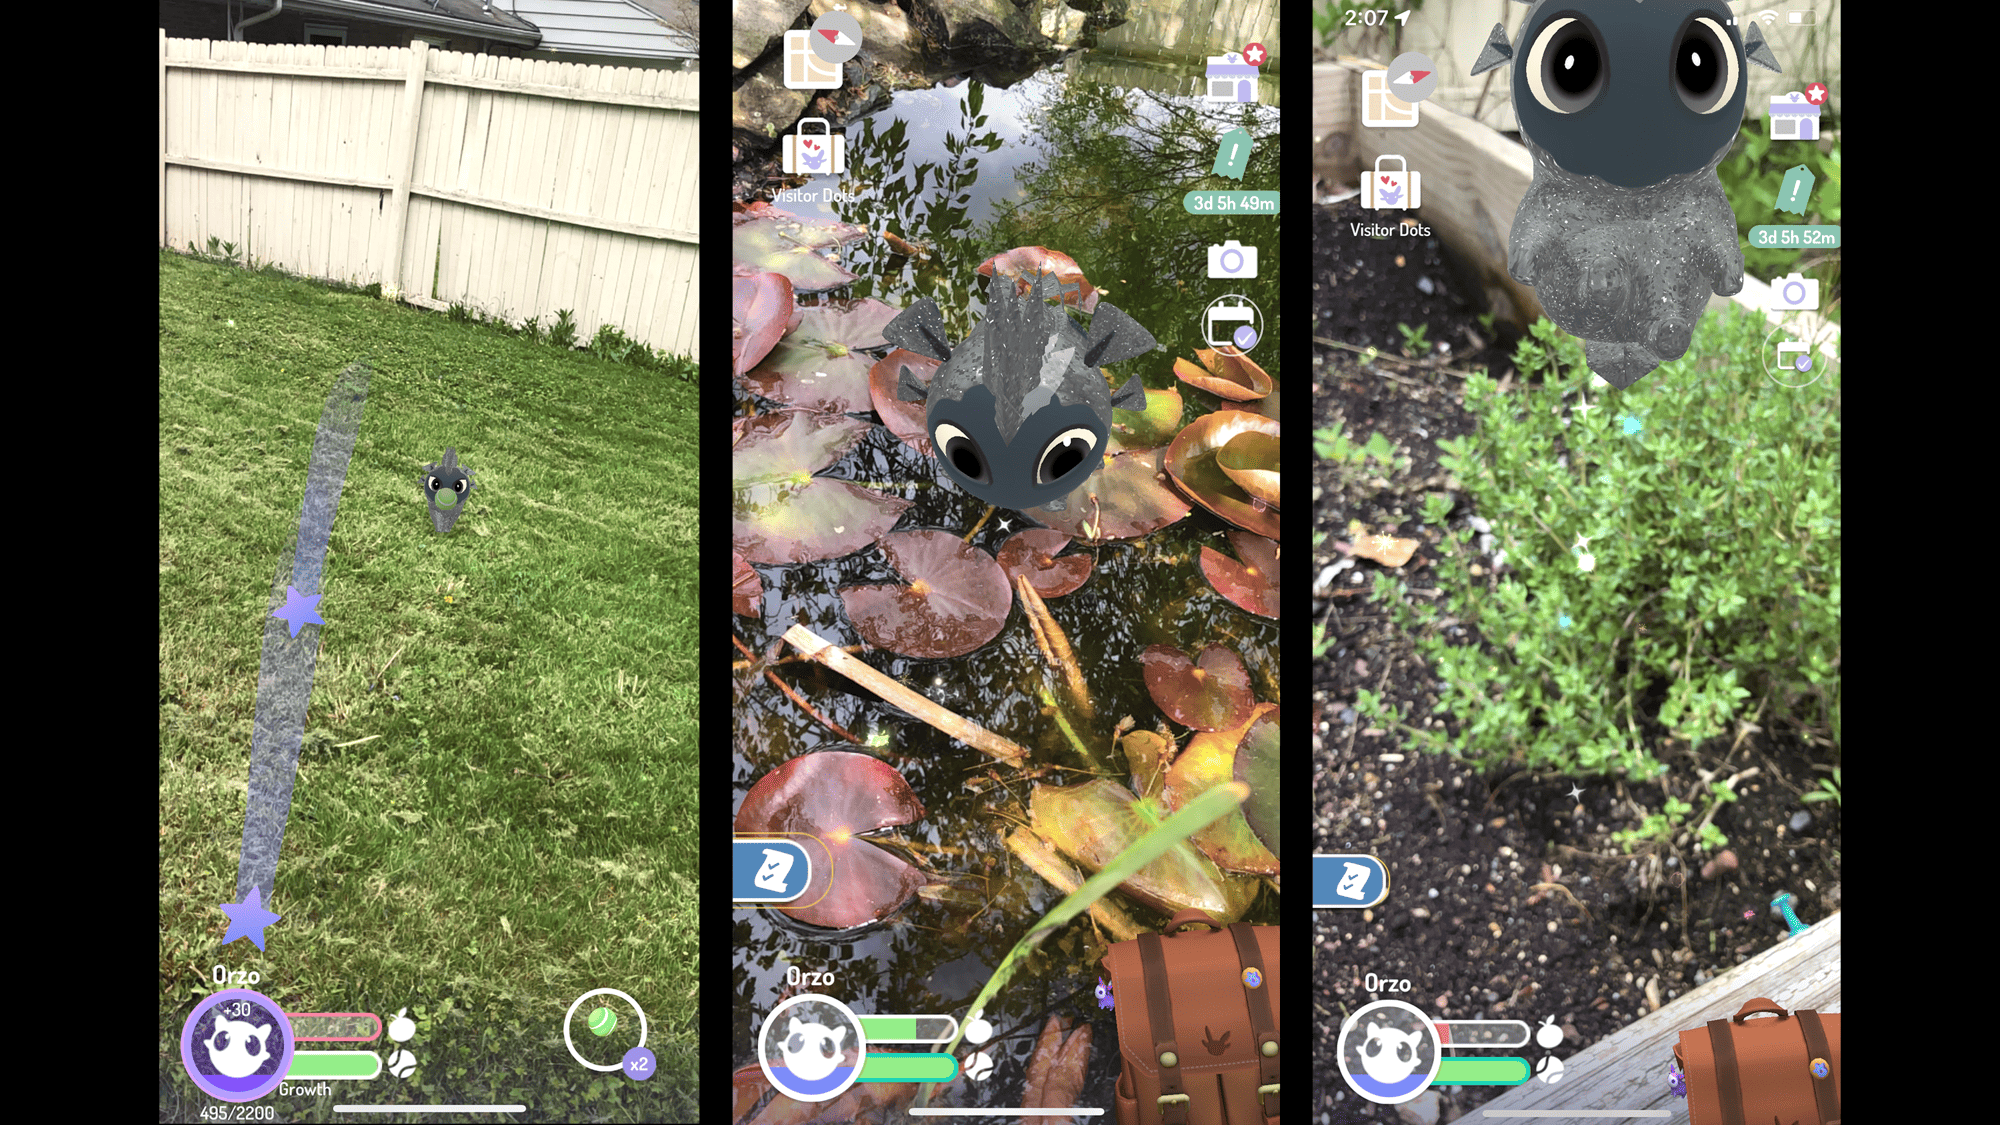 ثلاث صور من لعبة الواقع المعزز الجديدة من شركة نيانتك، بيريدوت، تظهر حيوان المؤلّفة الأليف، أورزو، وهو يلعب في فناء منزلها. الصورة إهداء من المؤلفة